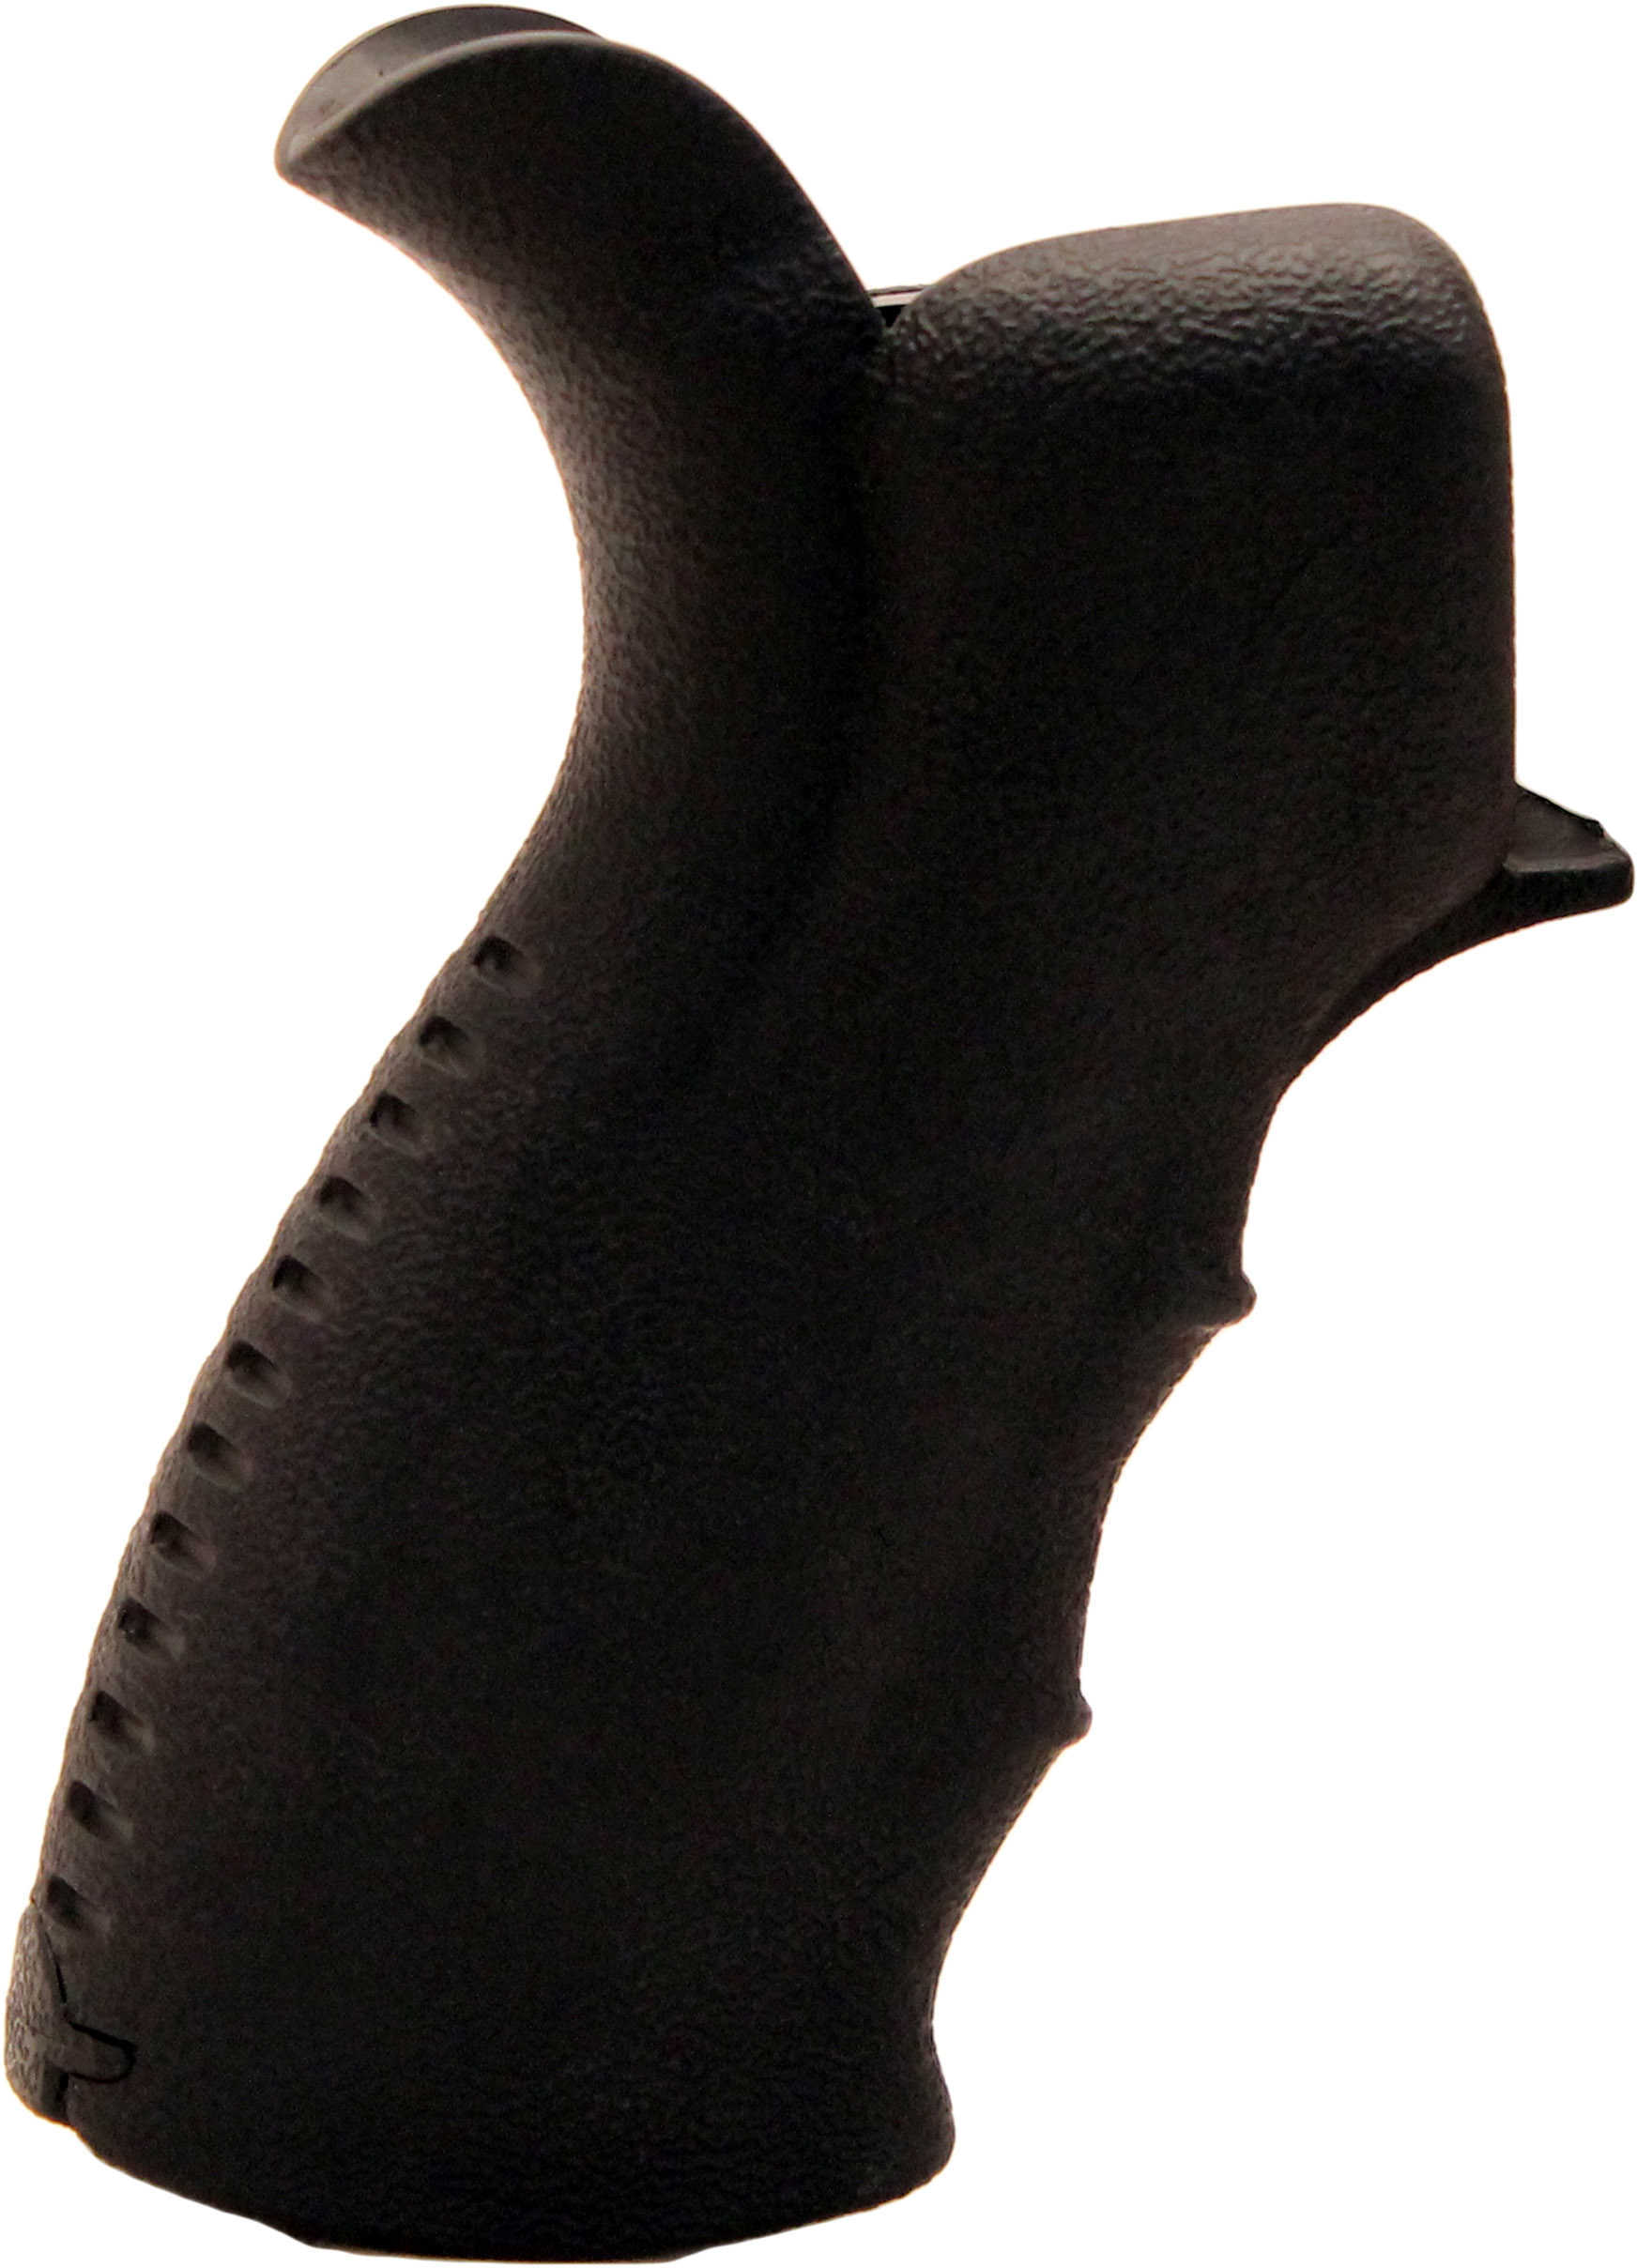 Leapers UTG Model 4/15 Ergonomic Pistol Grips - Black